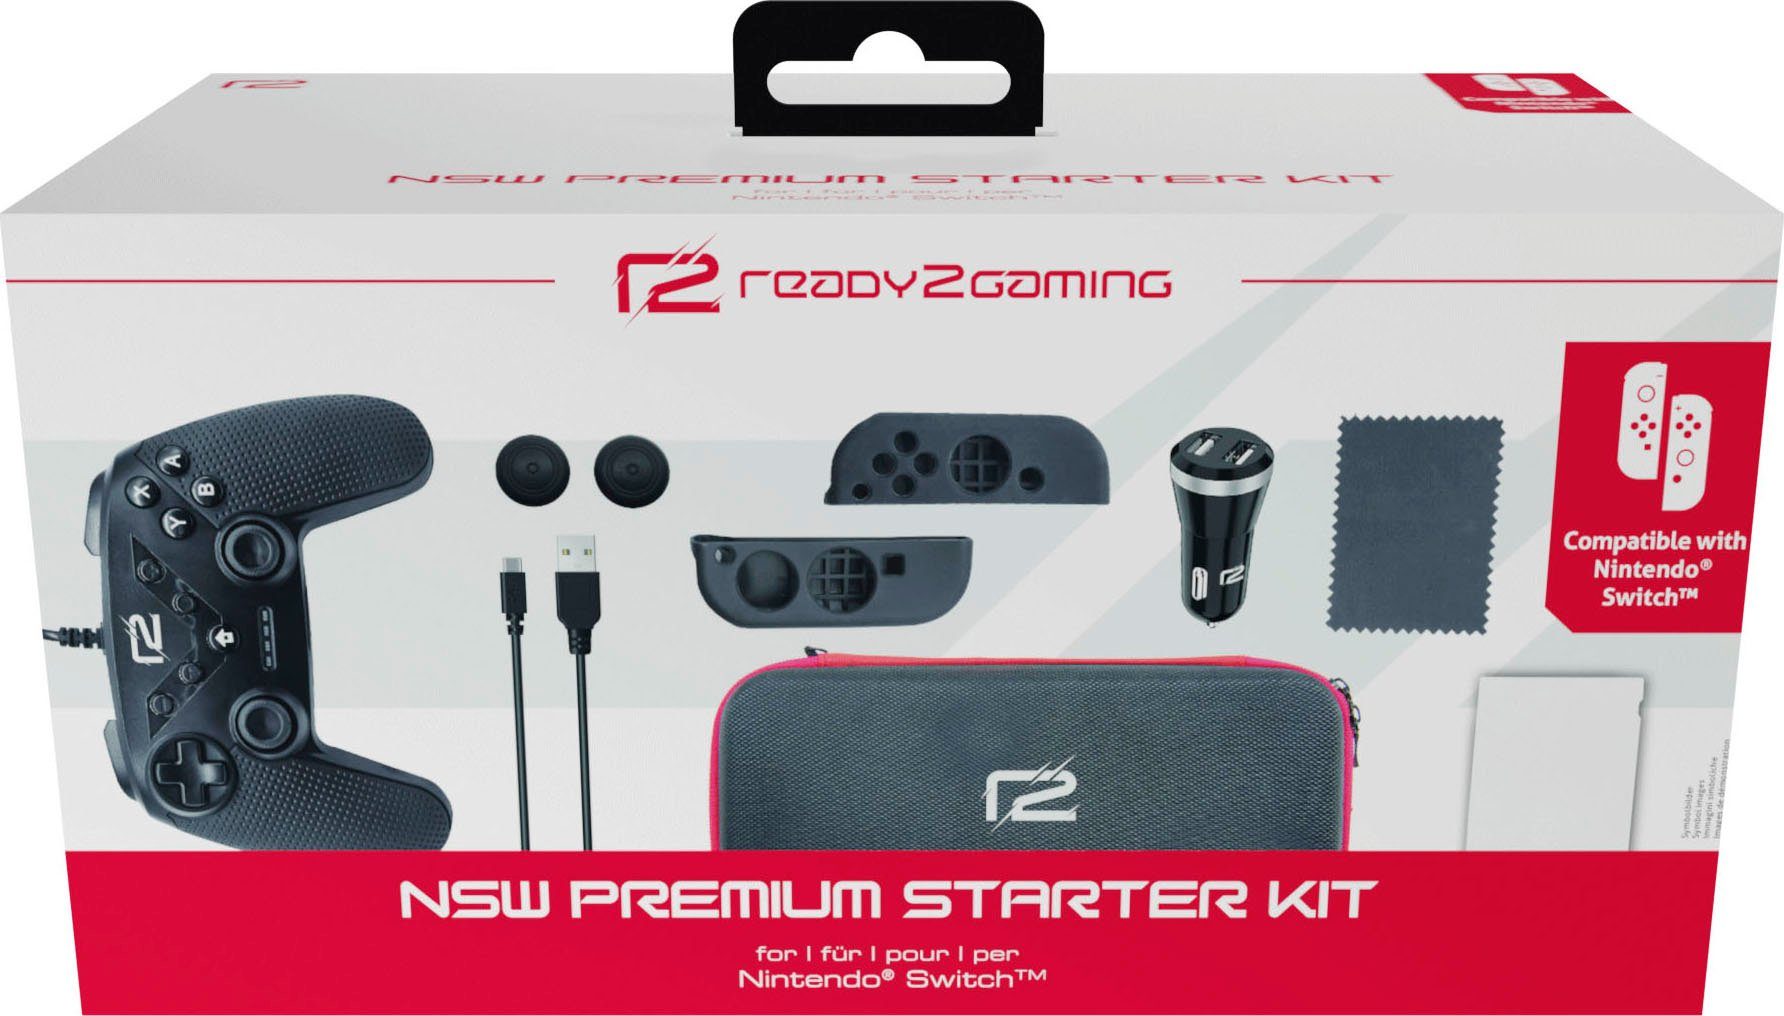 Nintendo-Controller Premium Switch Nintendo Kit Starter Ready2gaming